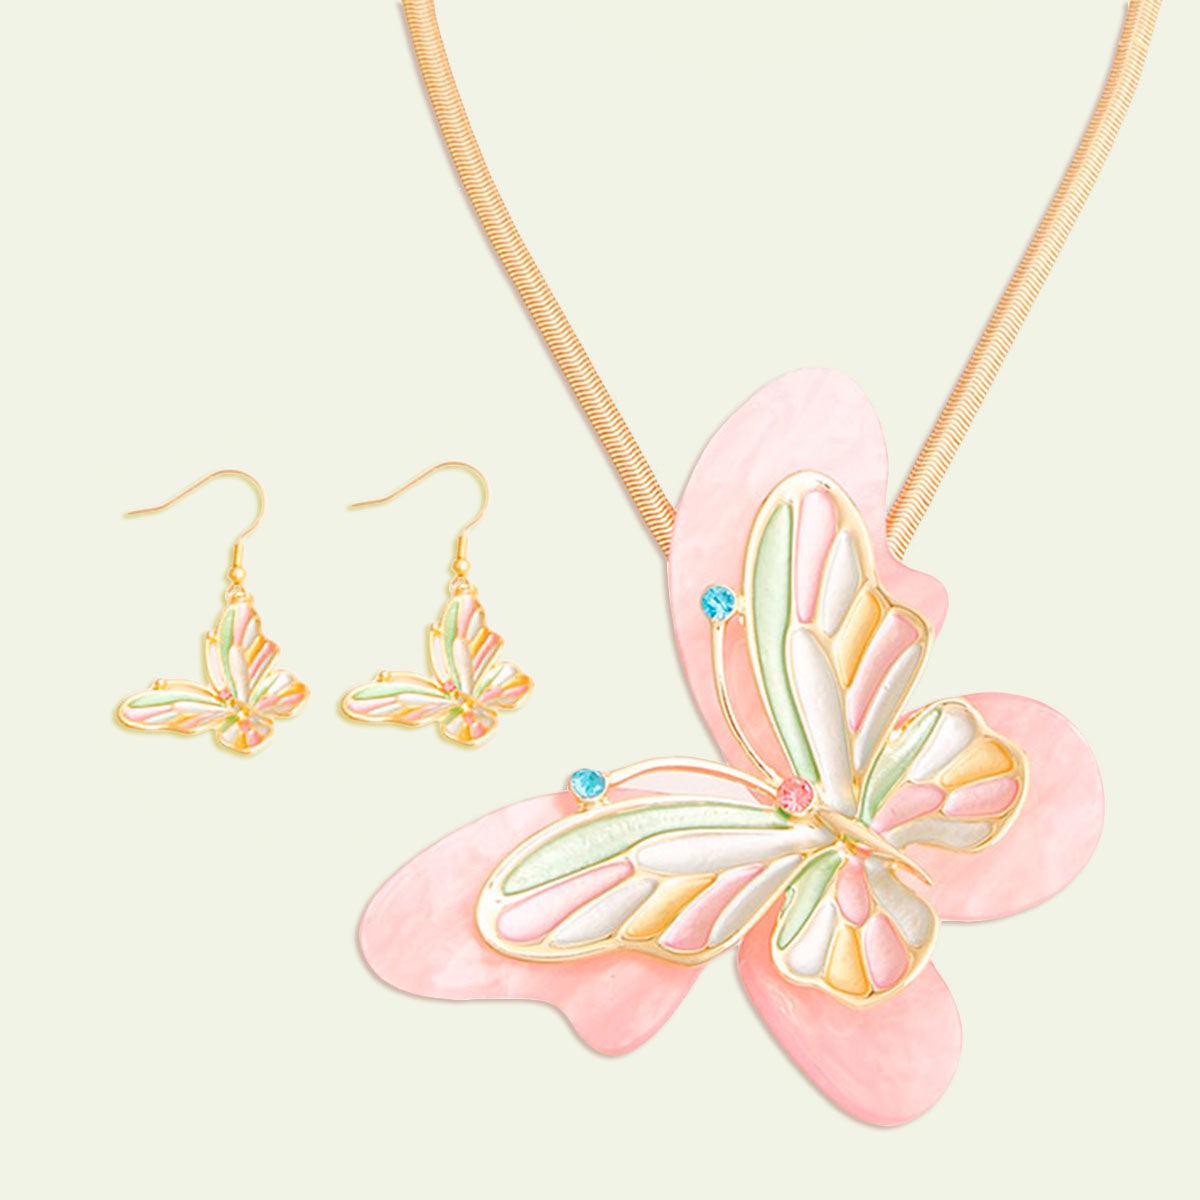 Lovely Butterfly Pendant Necklace Set: Flutter into Style